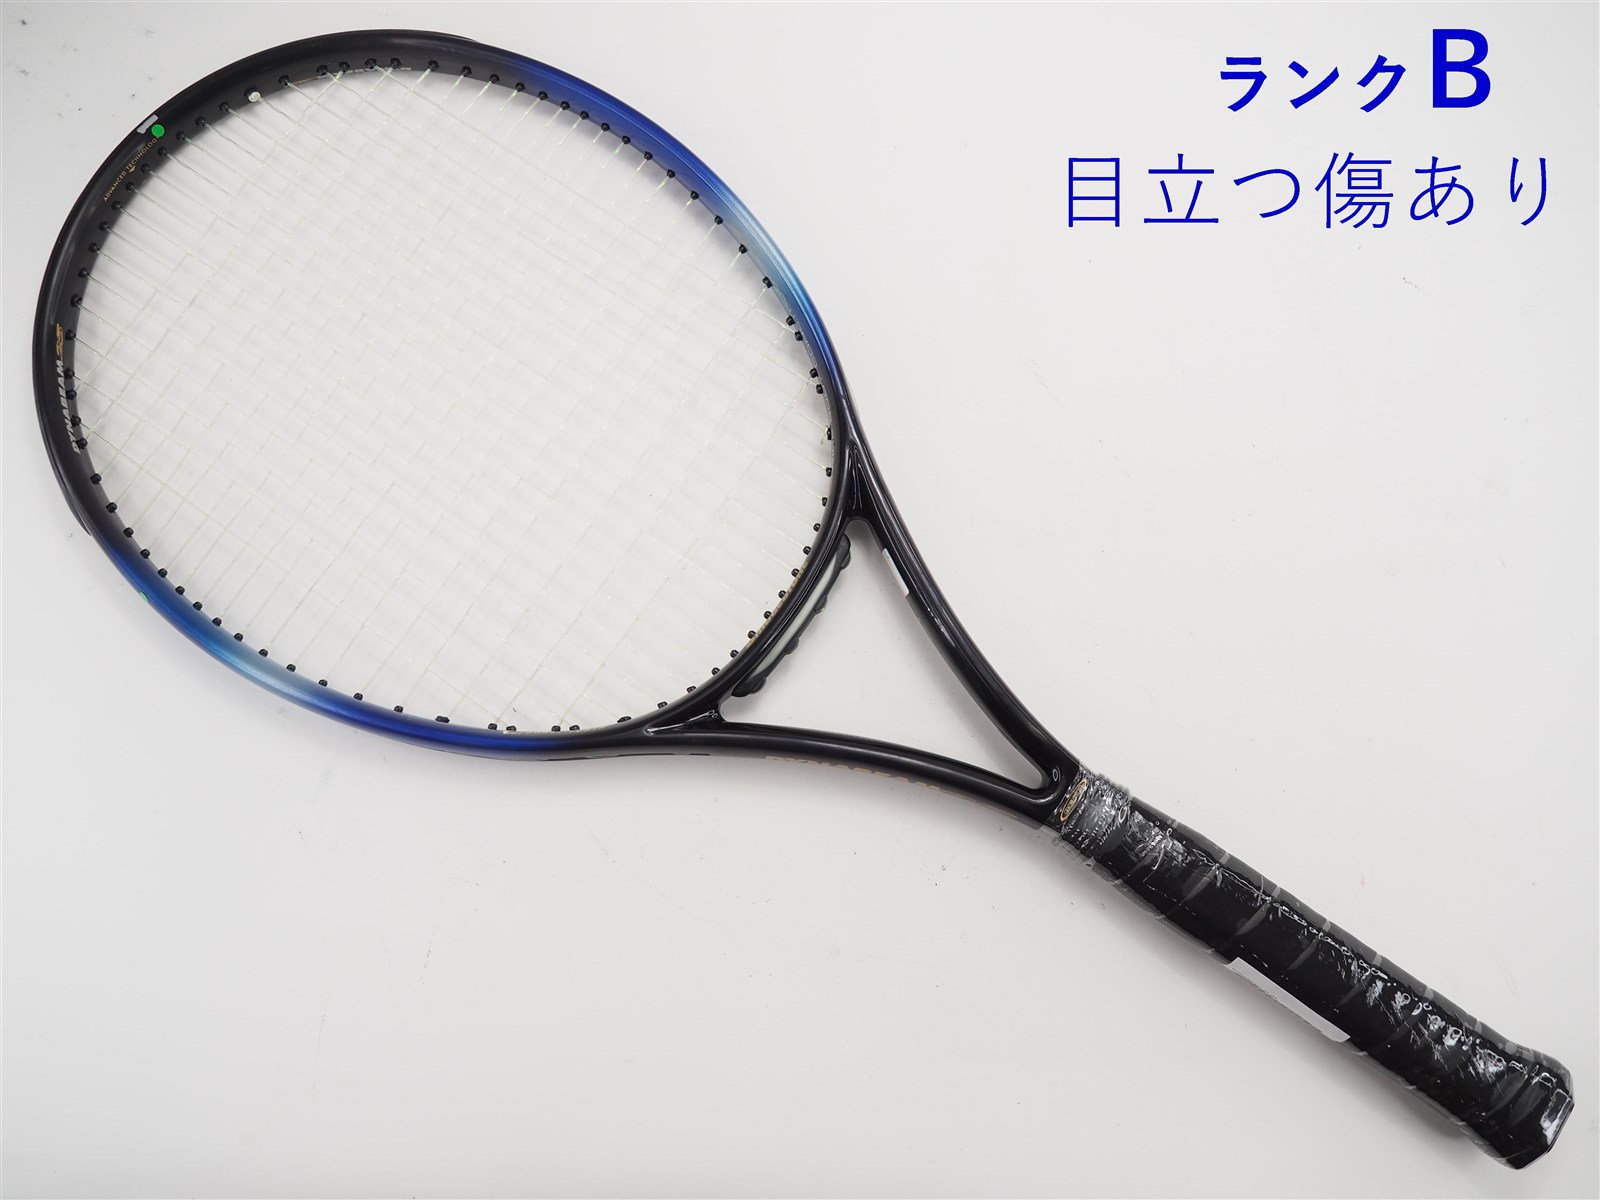 ブリヂストン ウィングビームM45 テニスの王子様 向日岳人モデル - テニス